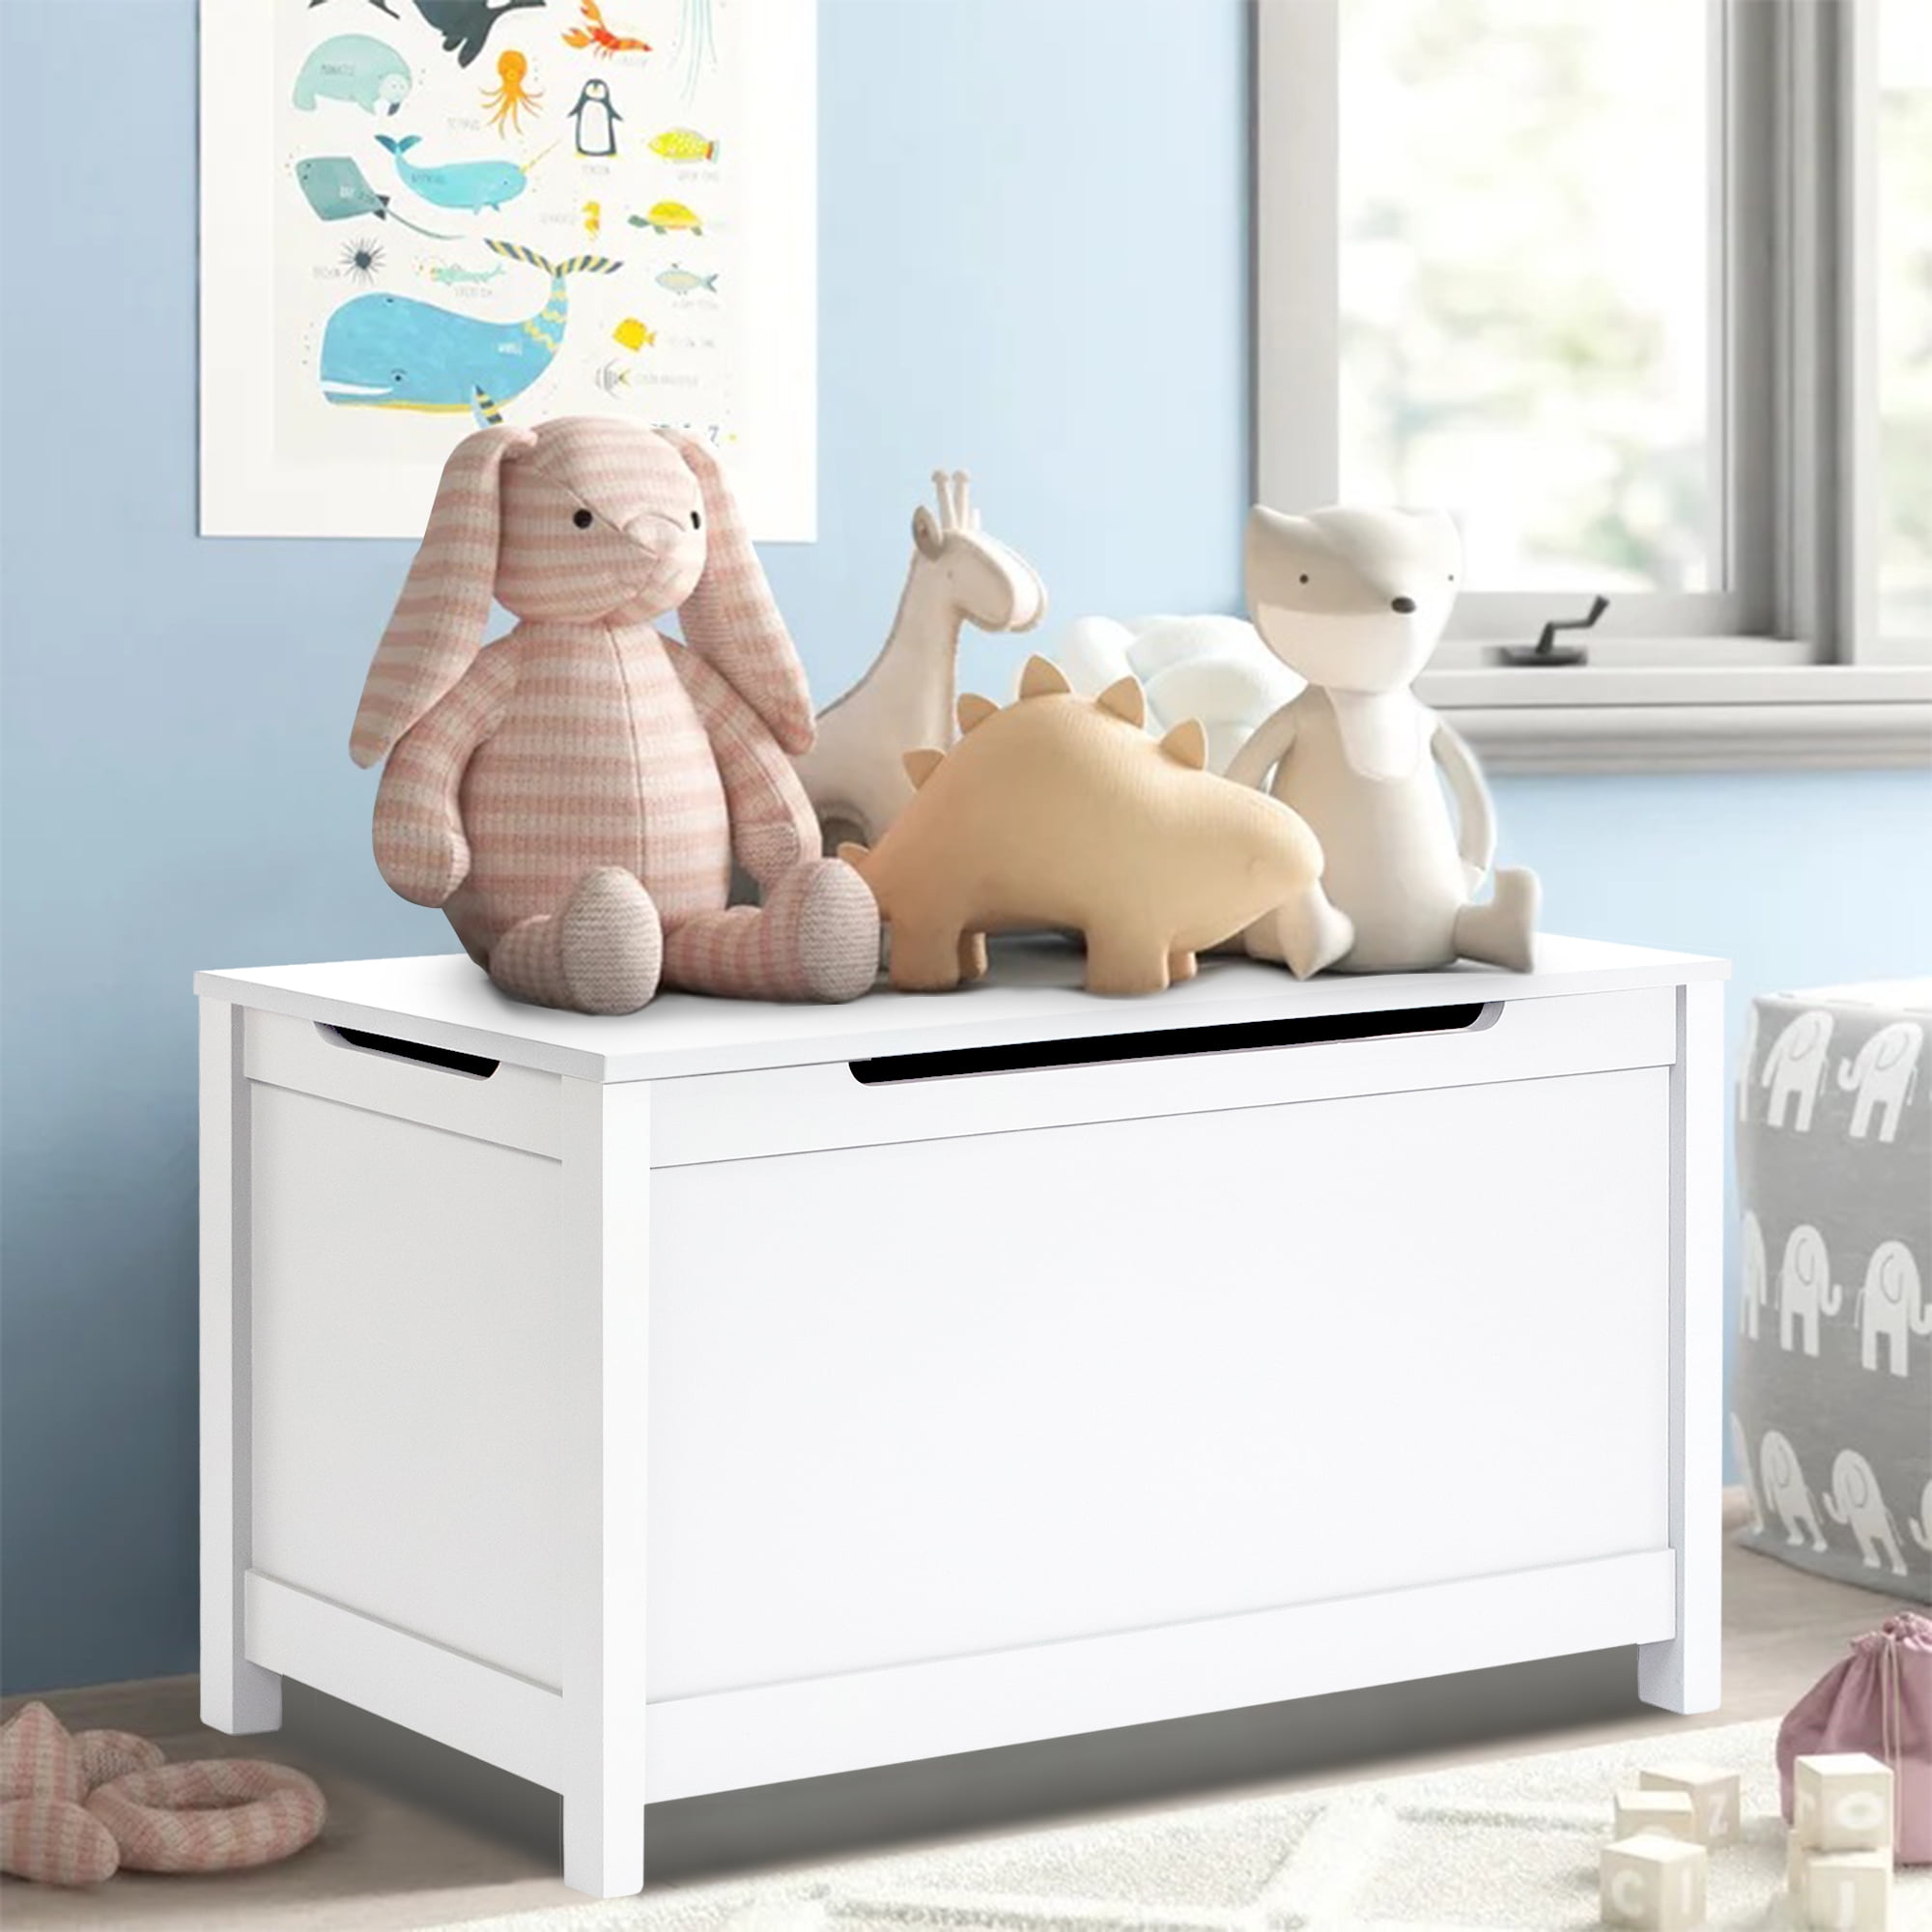 SR White Cloud Star Children’s Toy Storage Box Wooden Legs Books Games Nursery Bedroom 